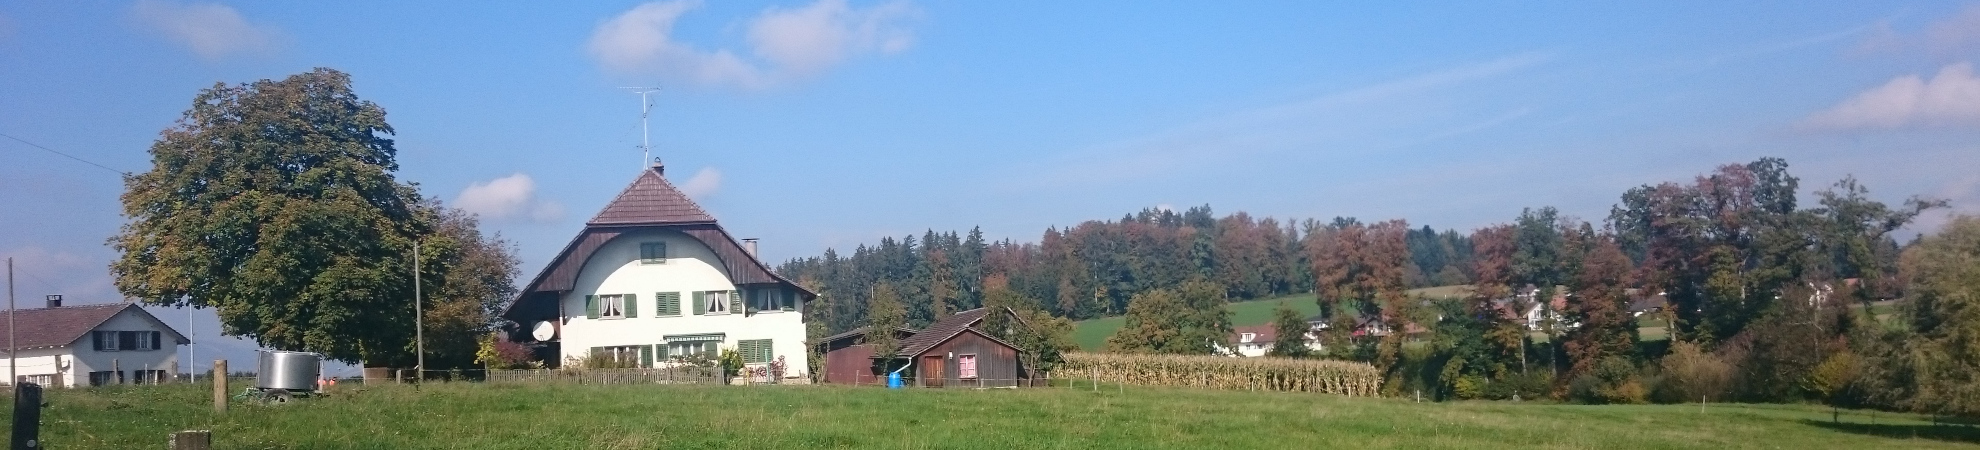 Bleienbachstrasse